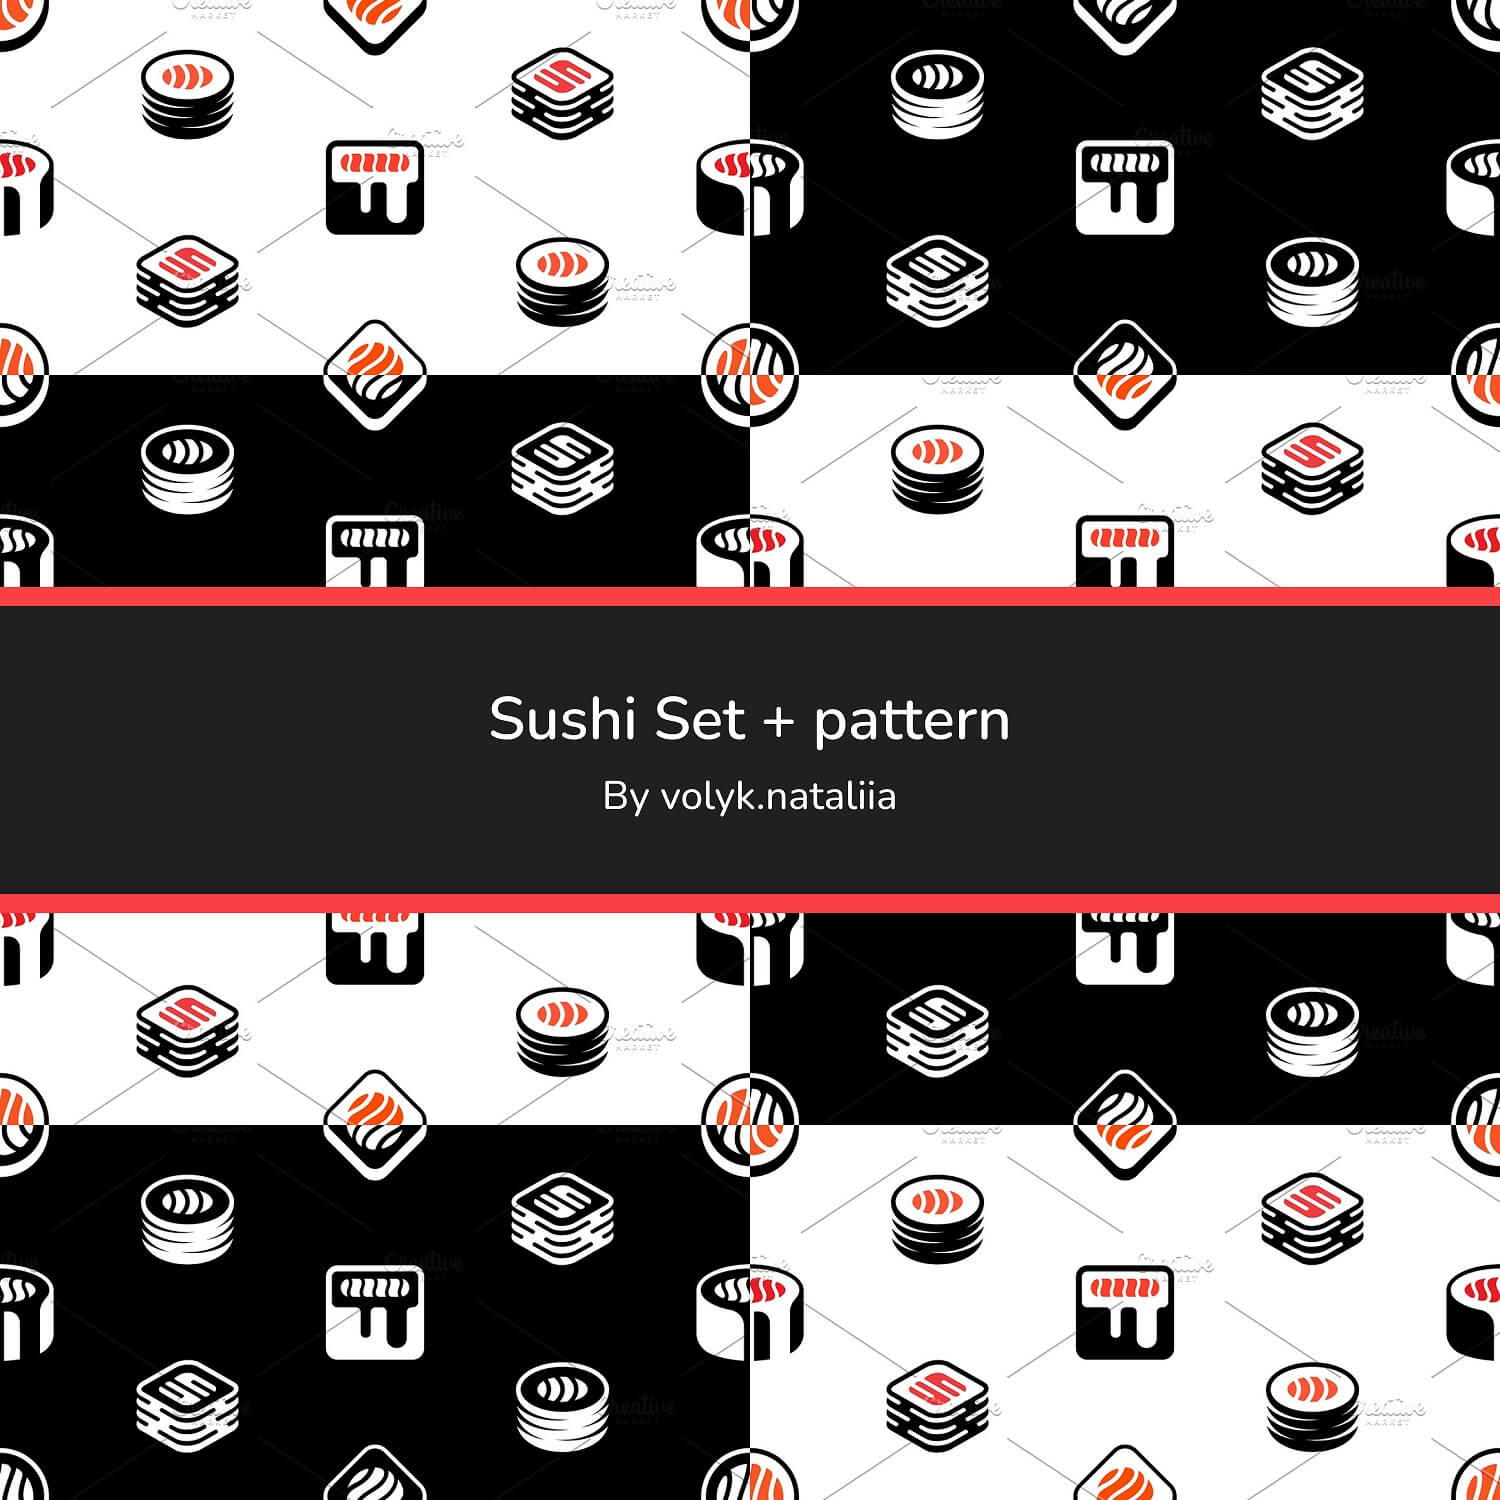 Sushi Set + Pattern on White and Black Background.